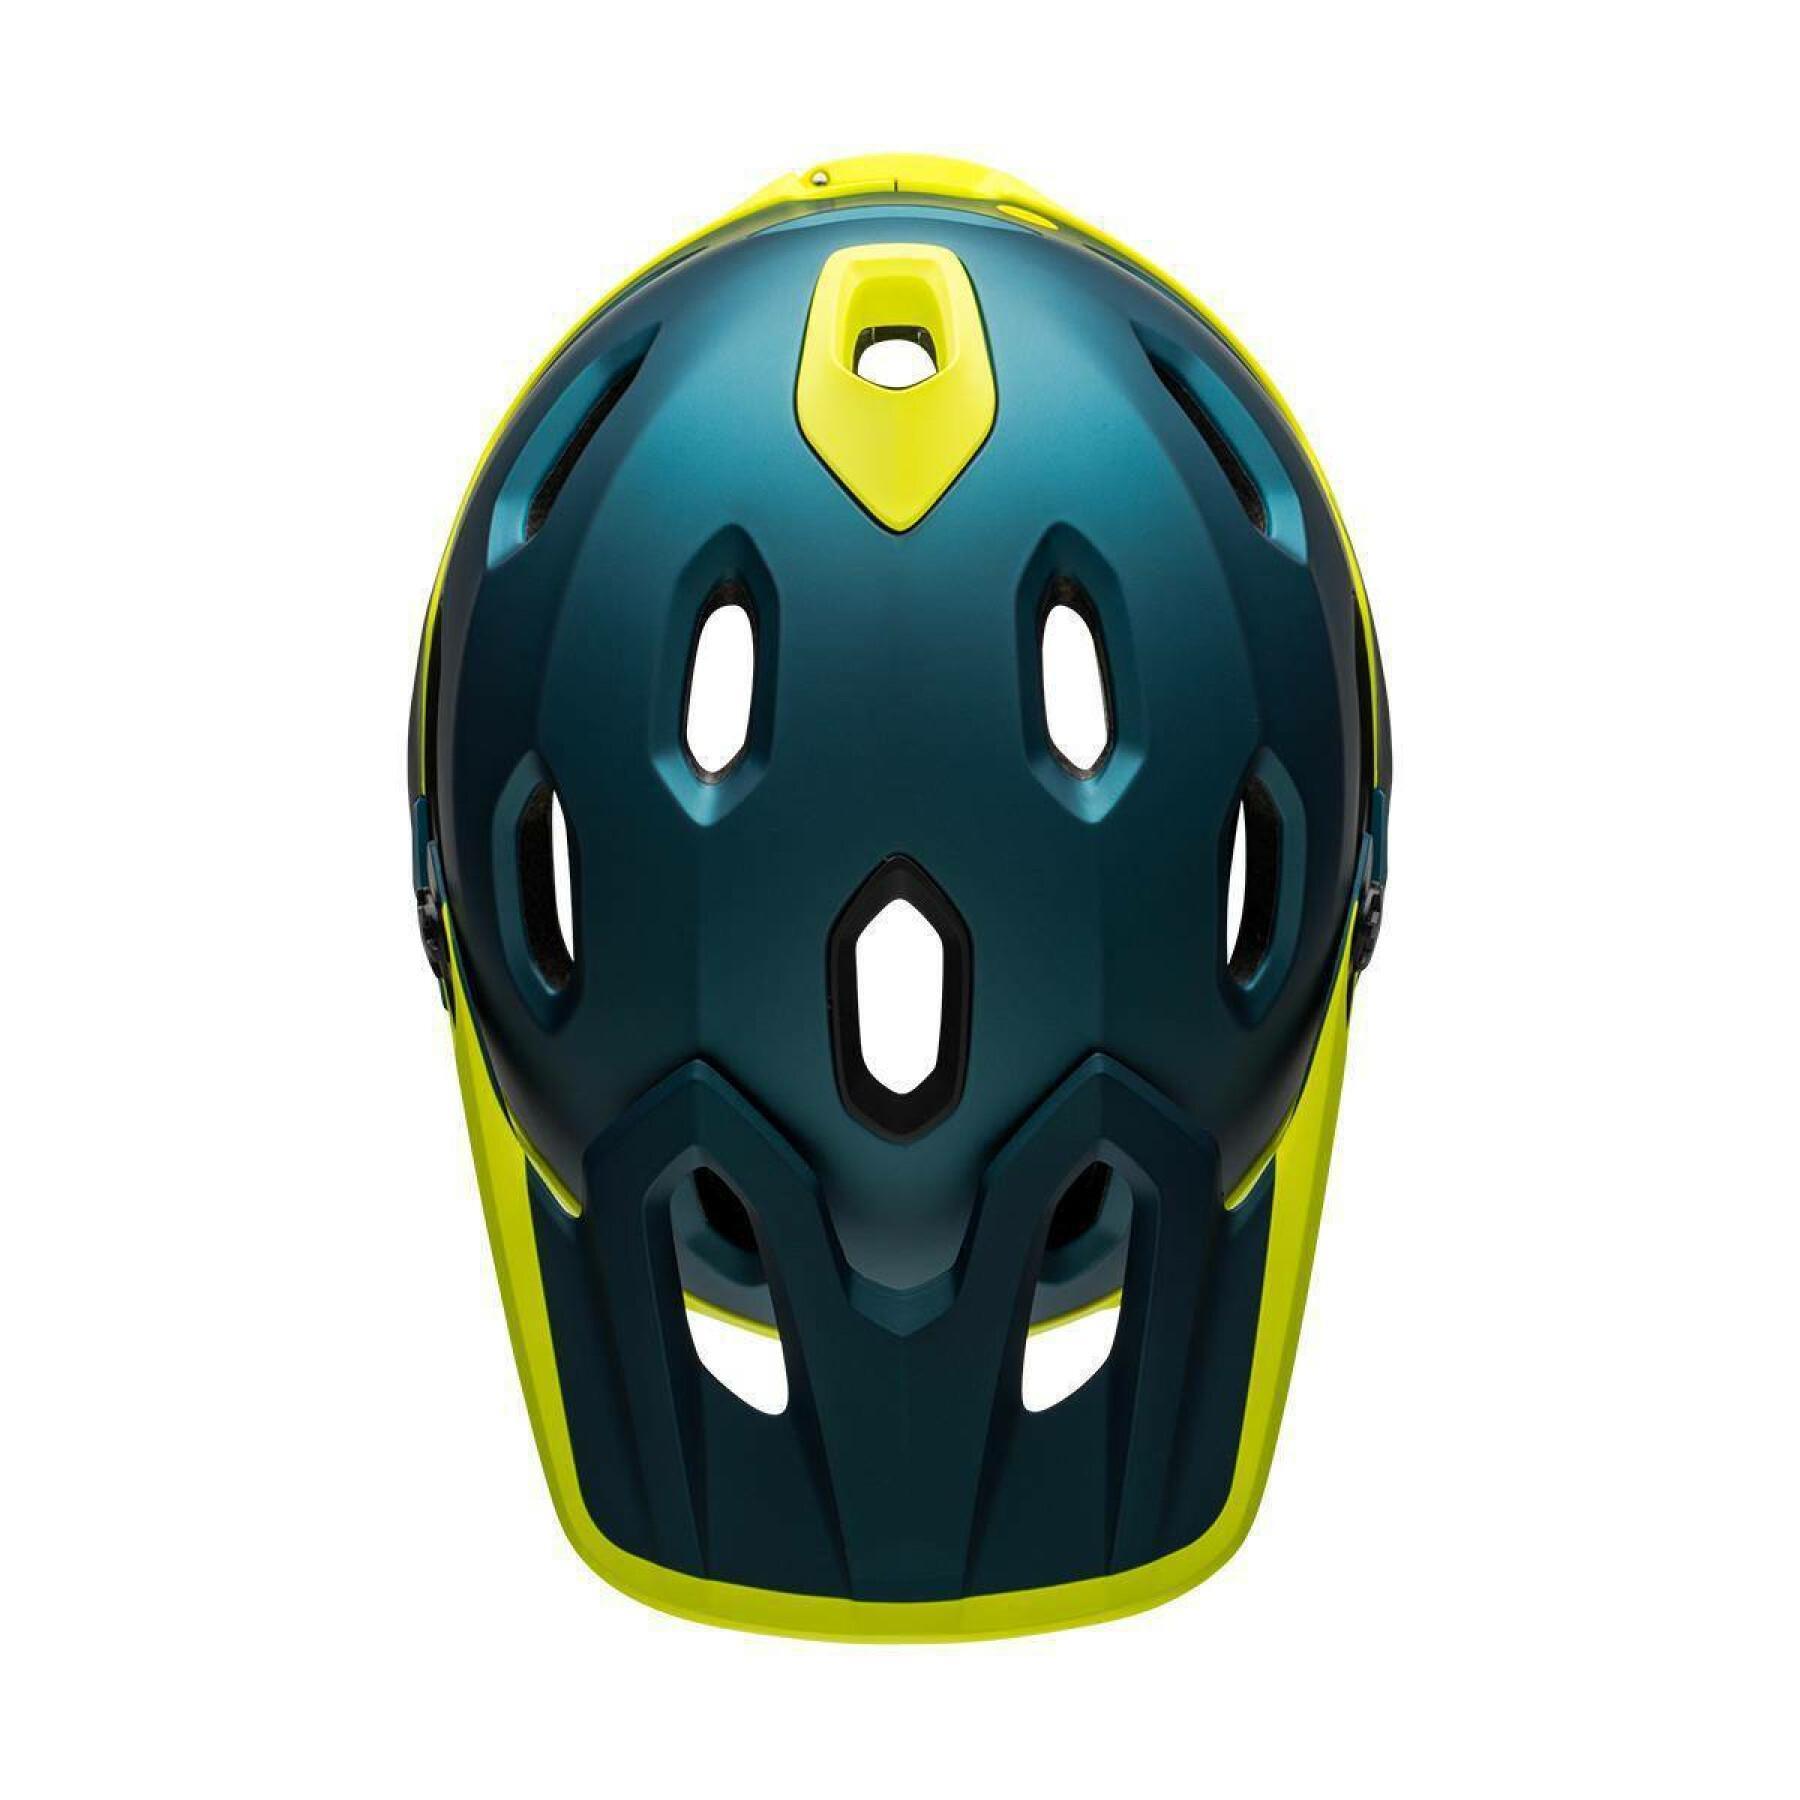 Full-face bike helmet Bell Super DH Mips